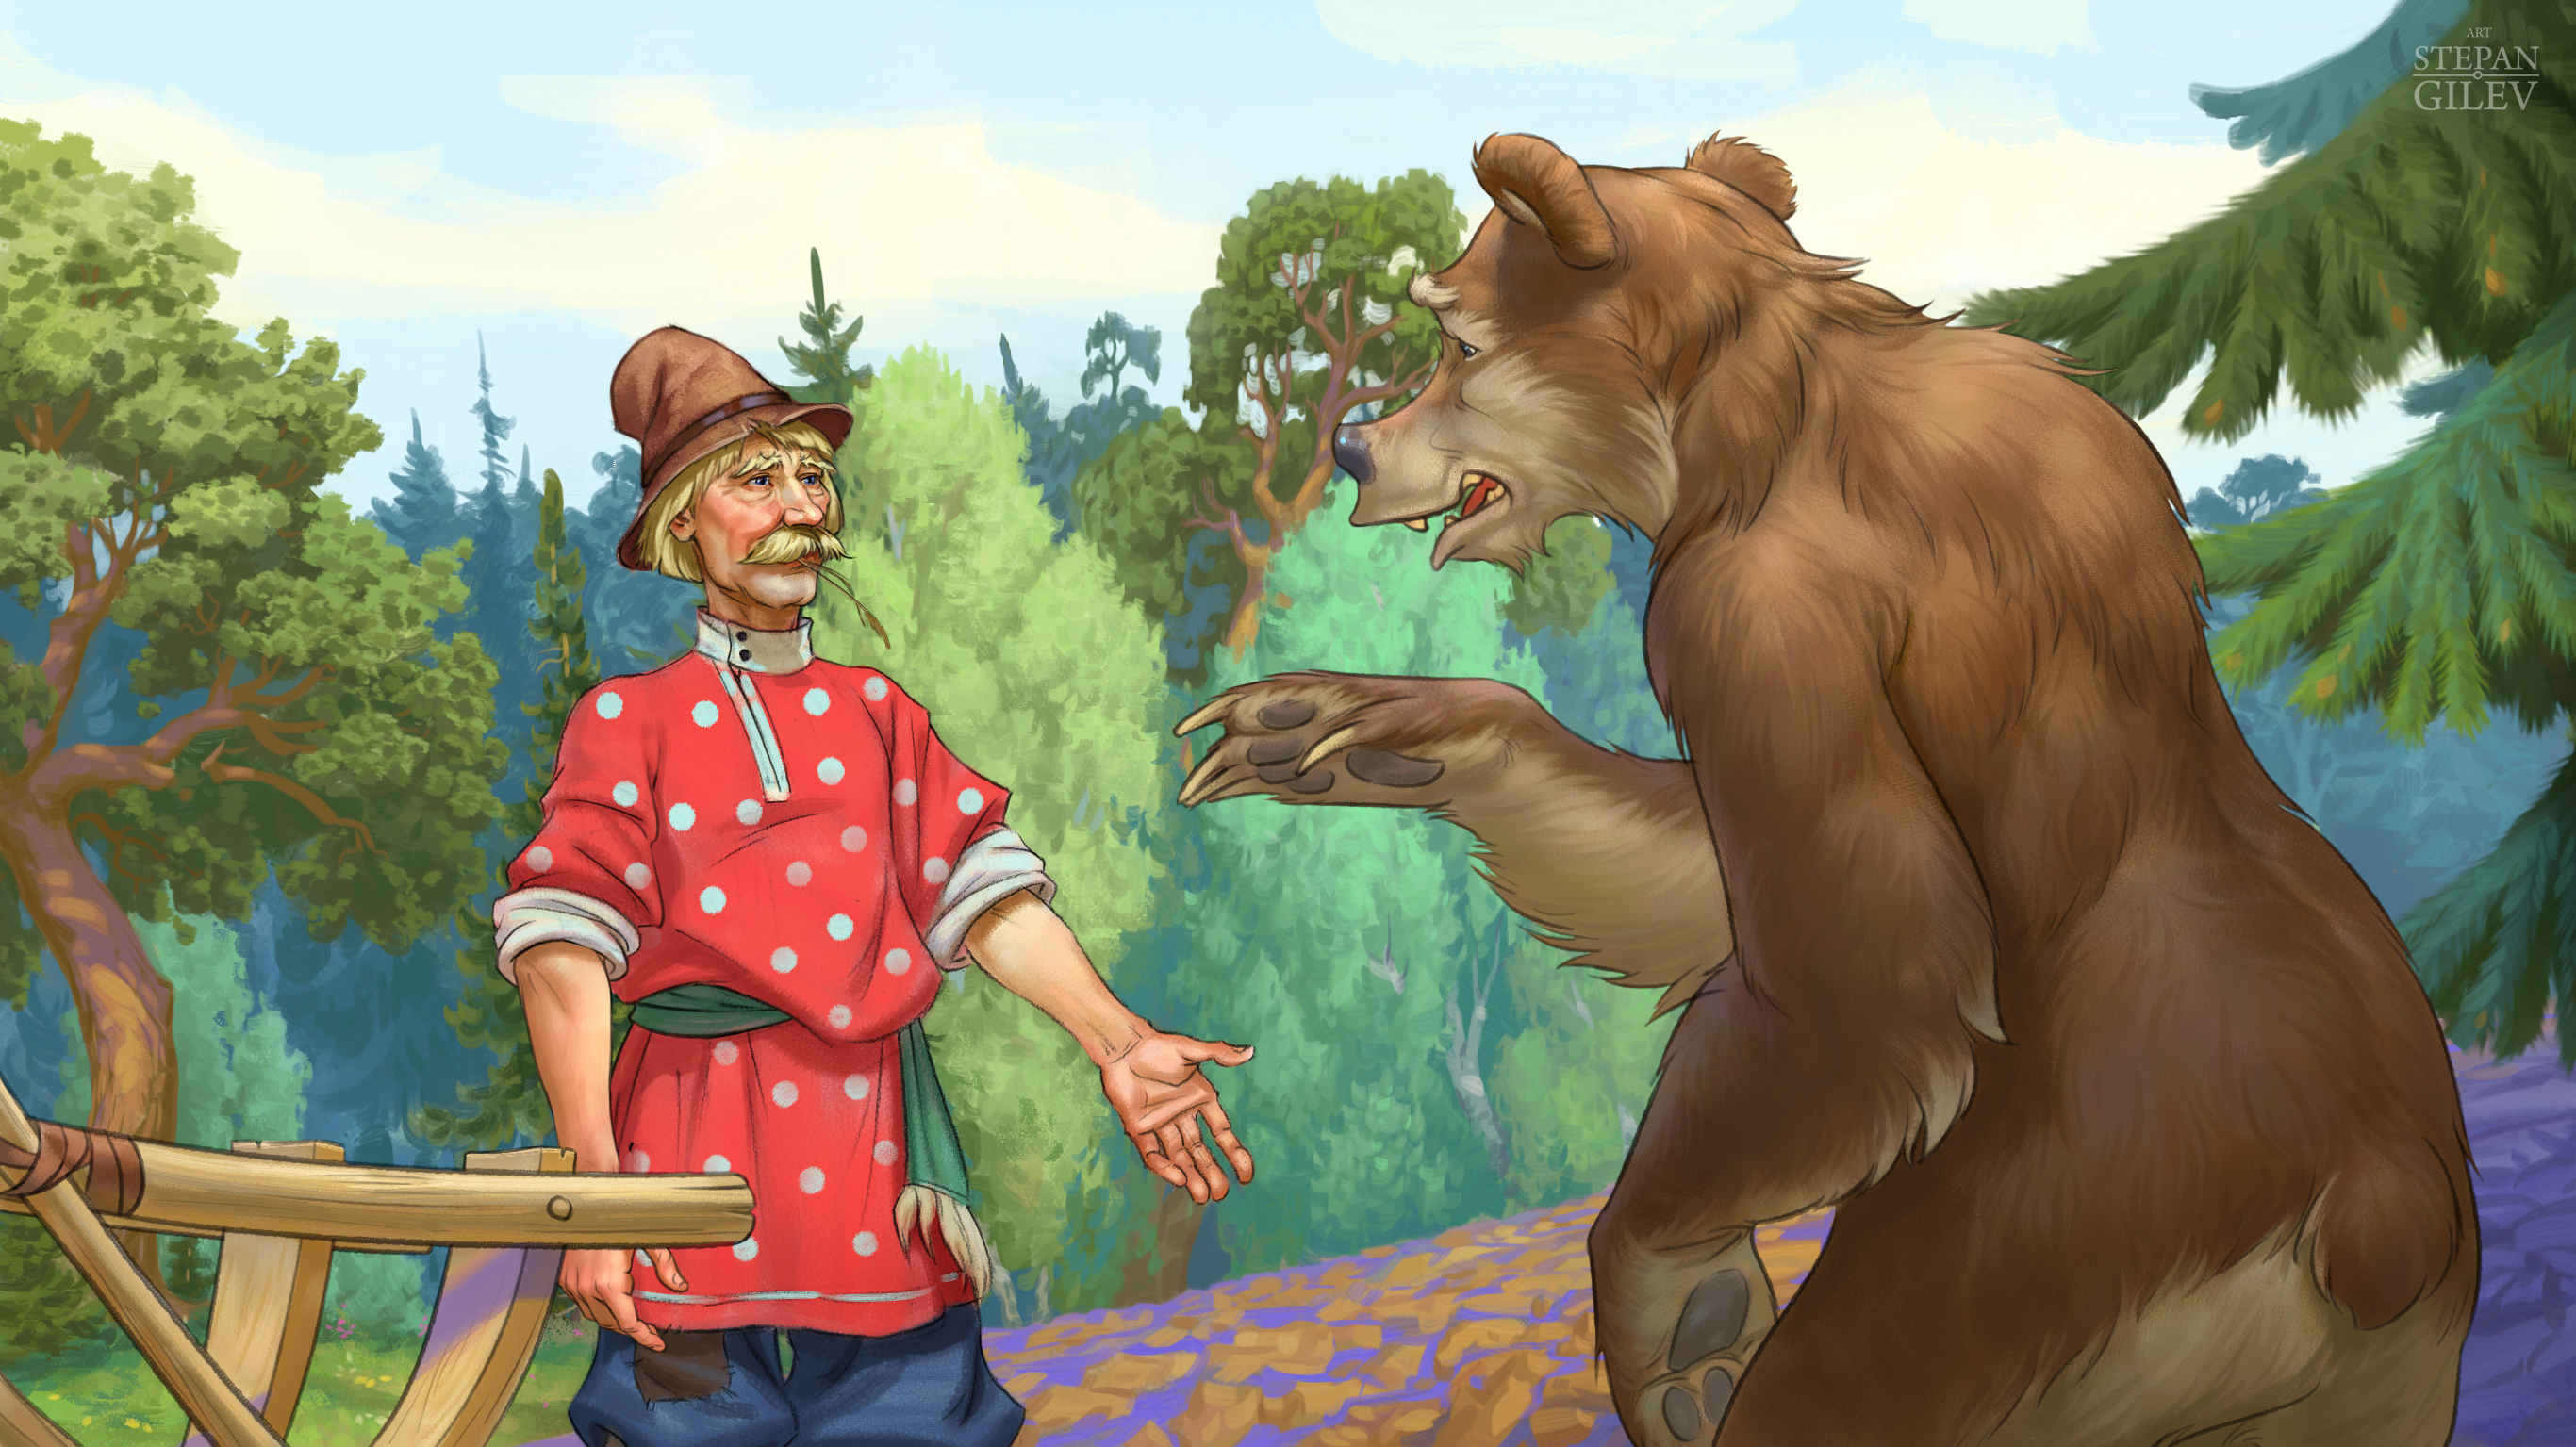 Прозвища зверей в народных сказках какие. Сказка медведь вершки корешки. Мужик и медведь.